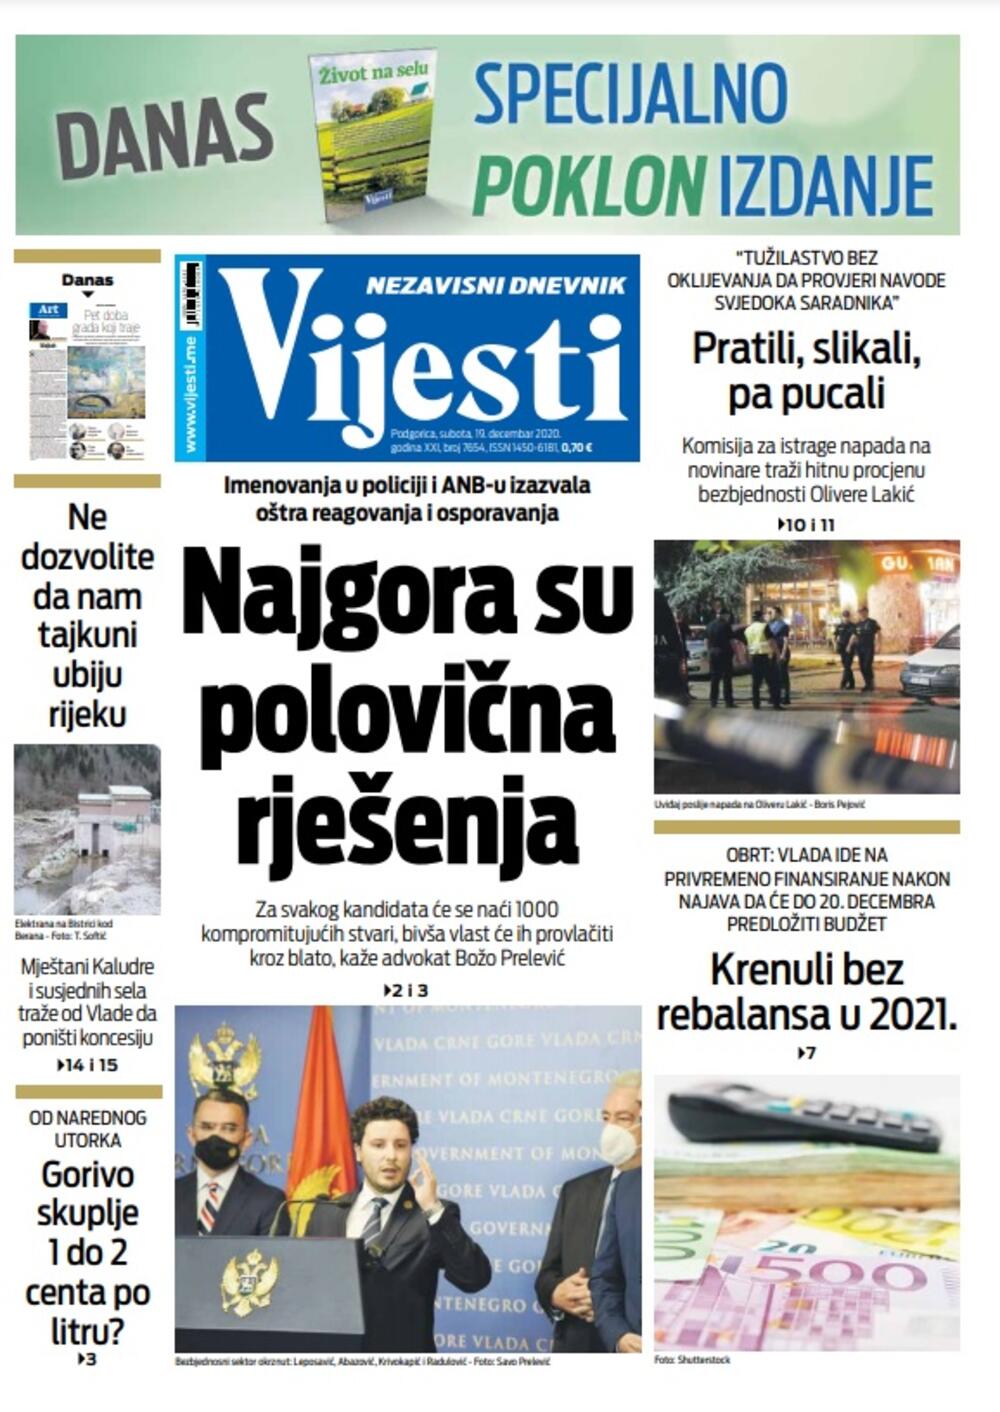 Naslovna strana "Vijesti" za subotu 19. decembar 2020. godine, Foto: Vijesti